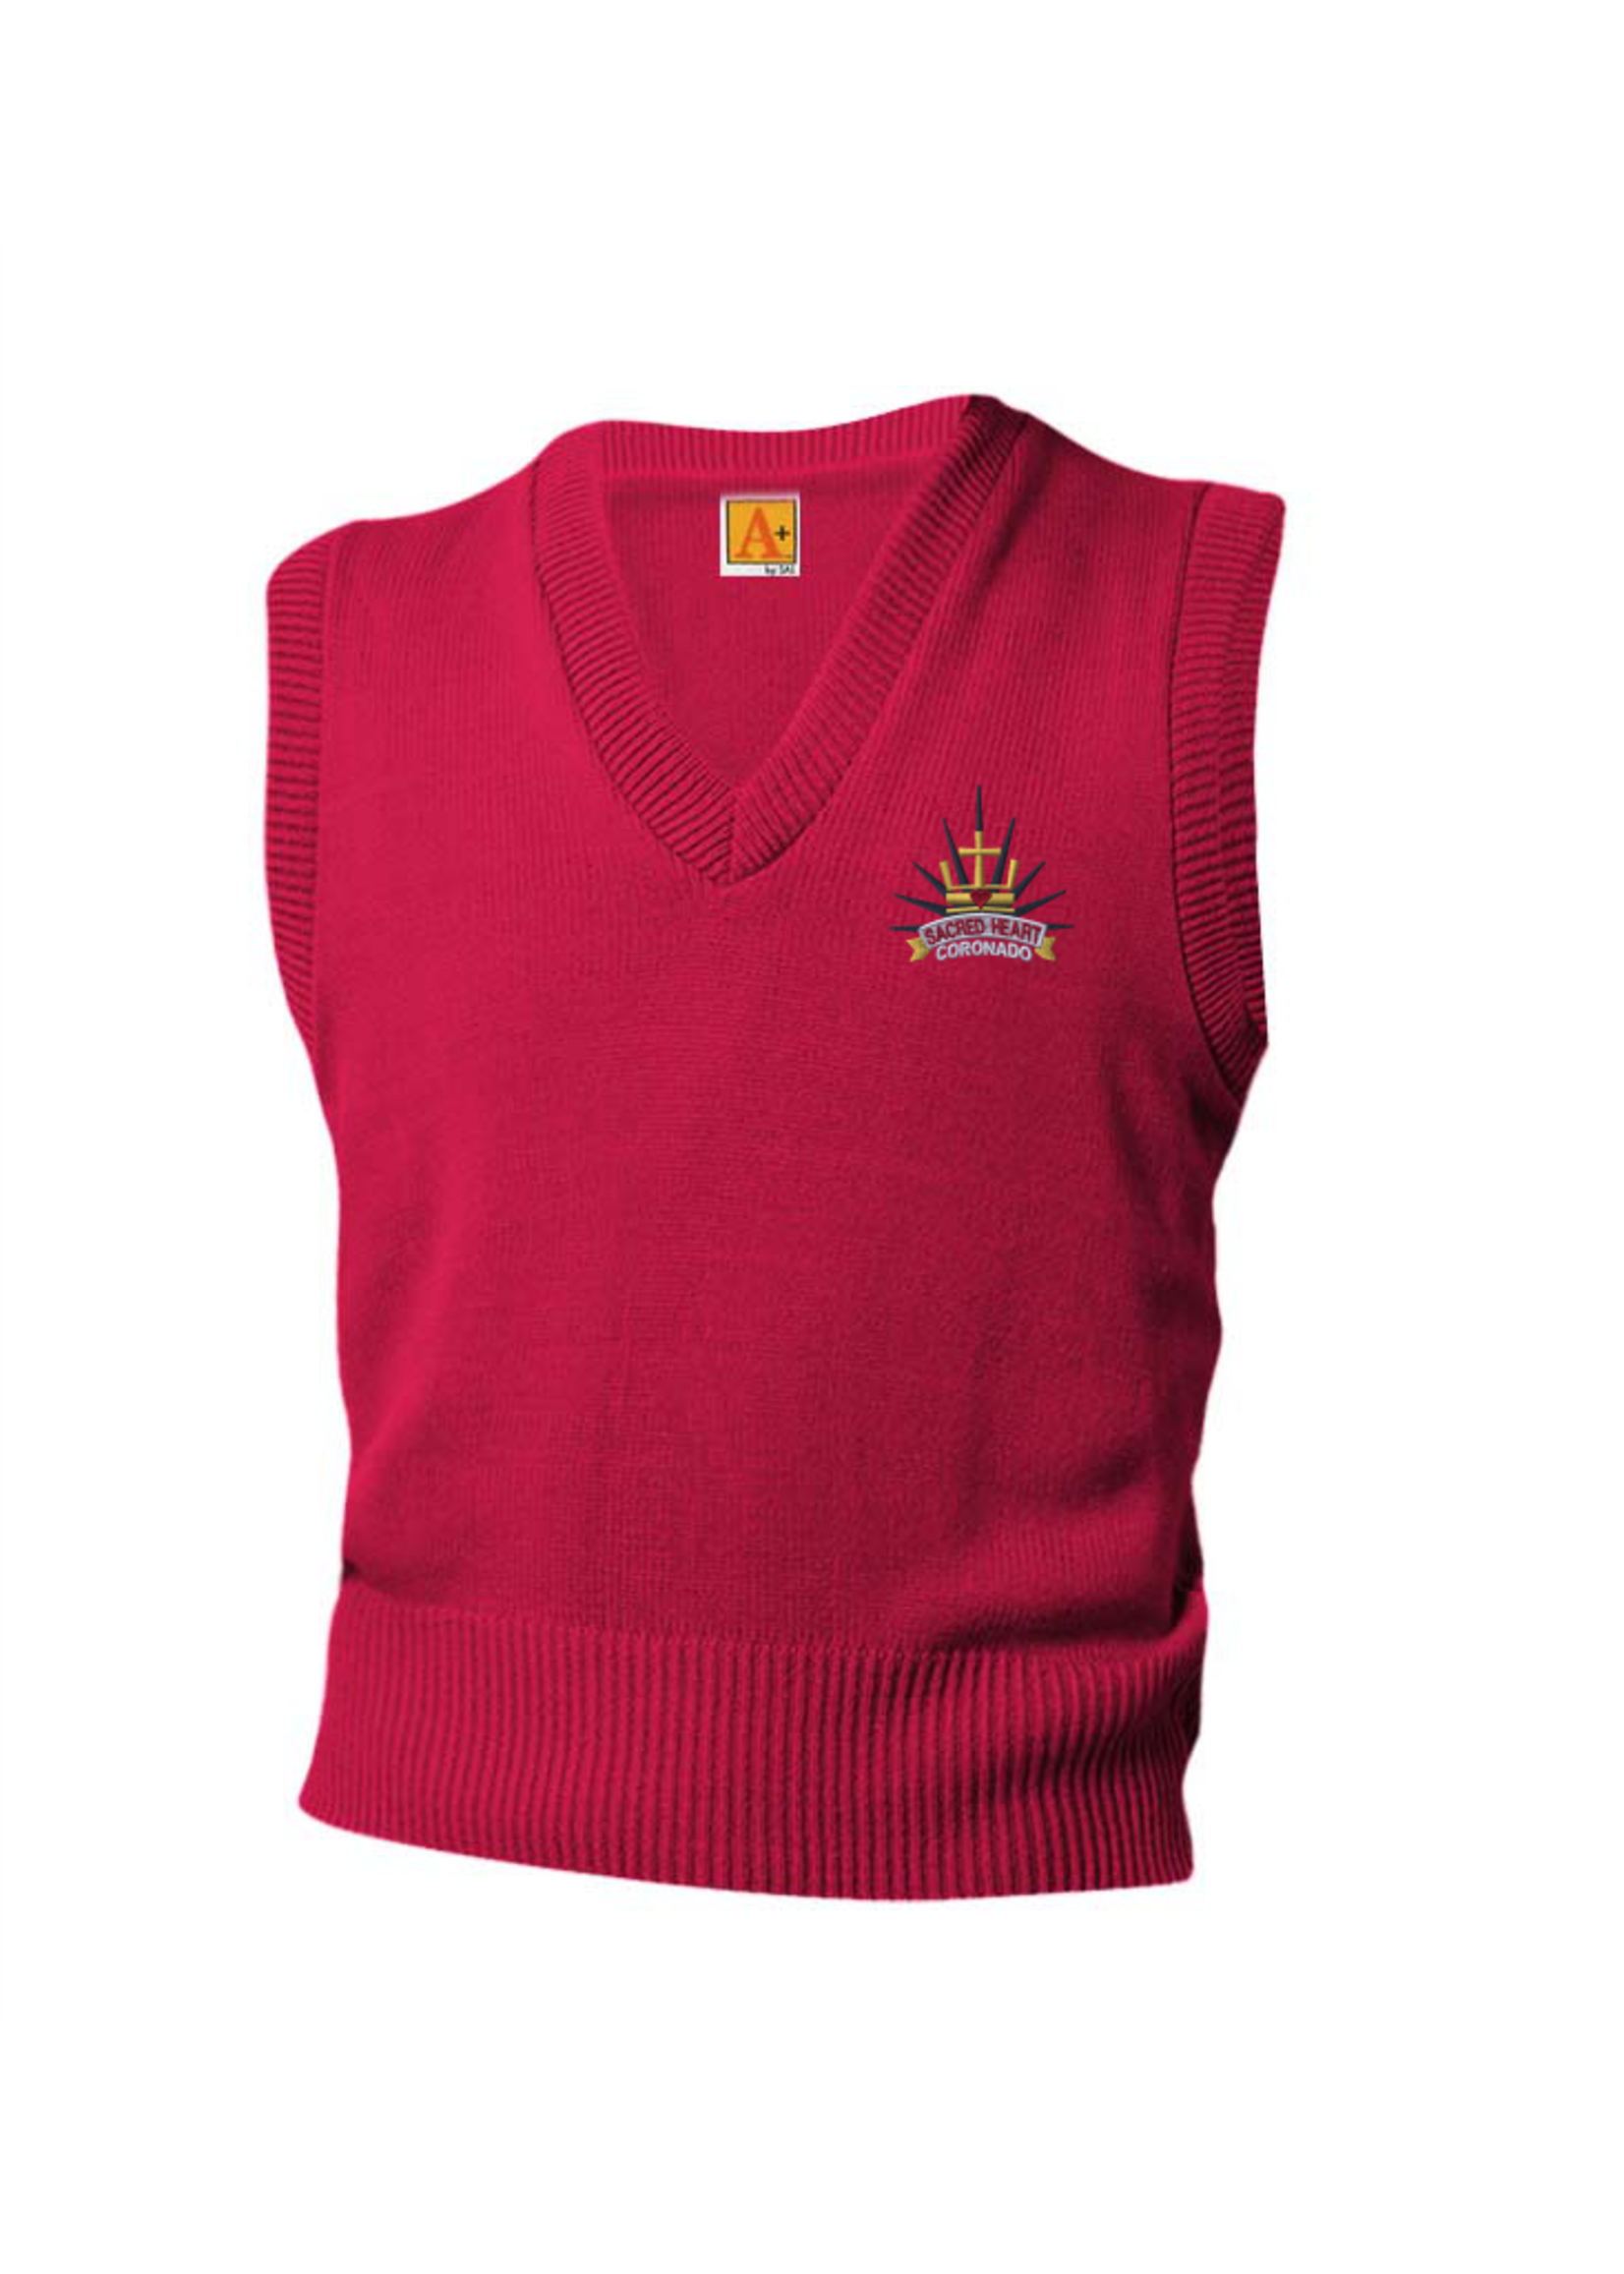 SHPS Red V-neck sweater vest